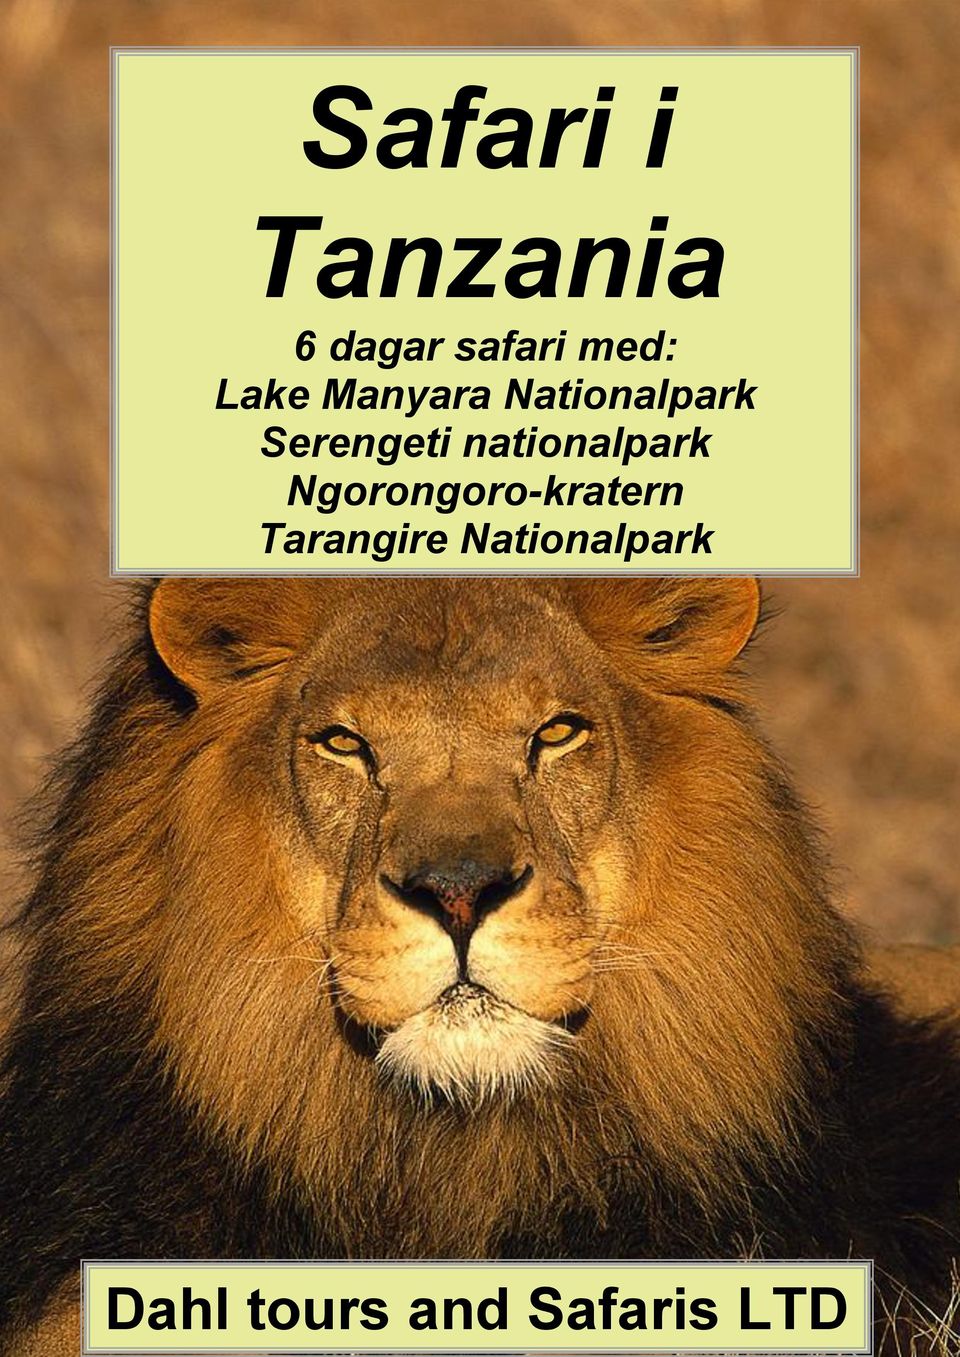 nationalpark Ngorongoro-kratern